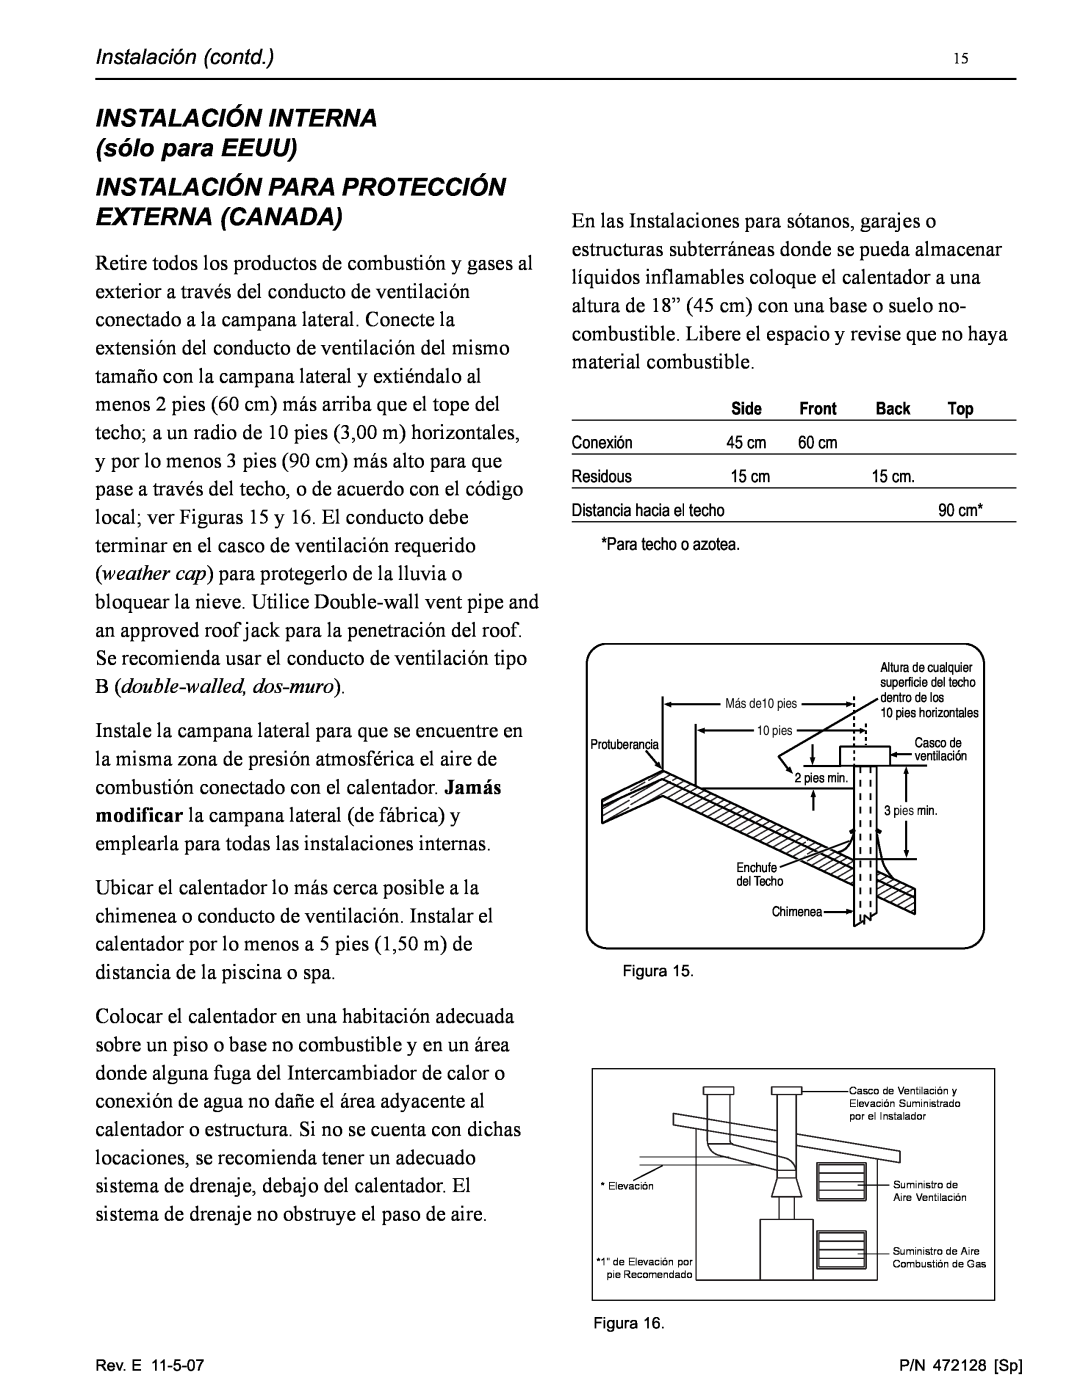 Pentair Hot Tub manual INSTALACIÓN INTERNA sólo para EEUU, Instalación Para Protección Externa Canada 